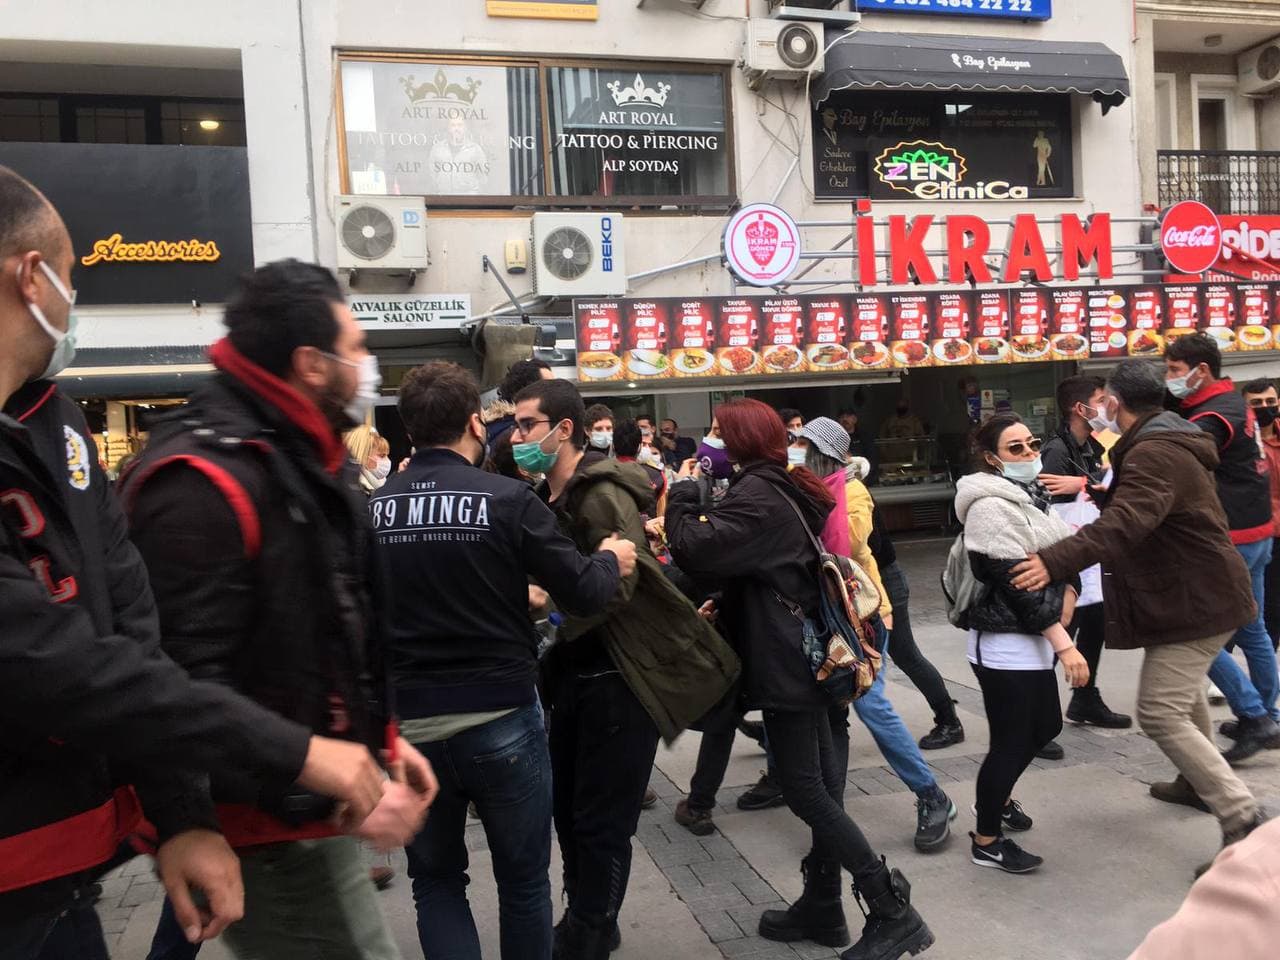 Kadıköy’deki eylemciler hakkında karar çıktı